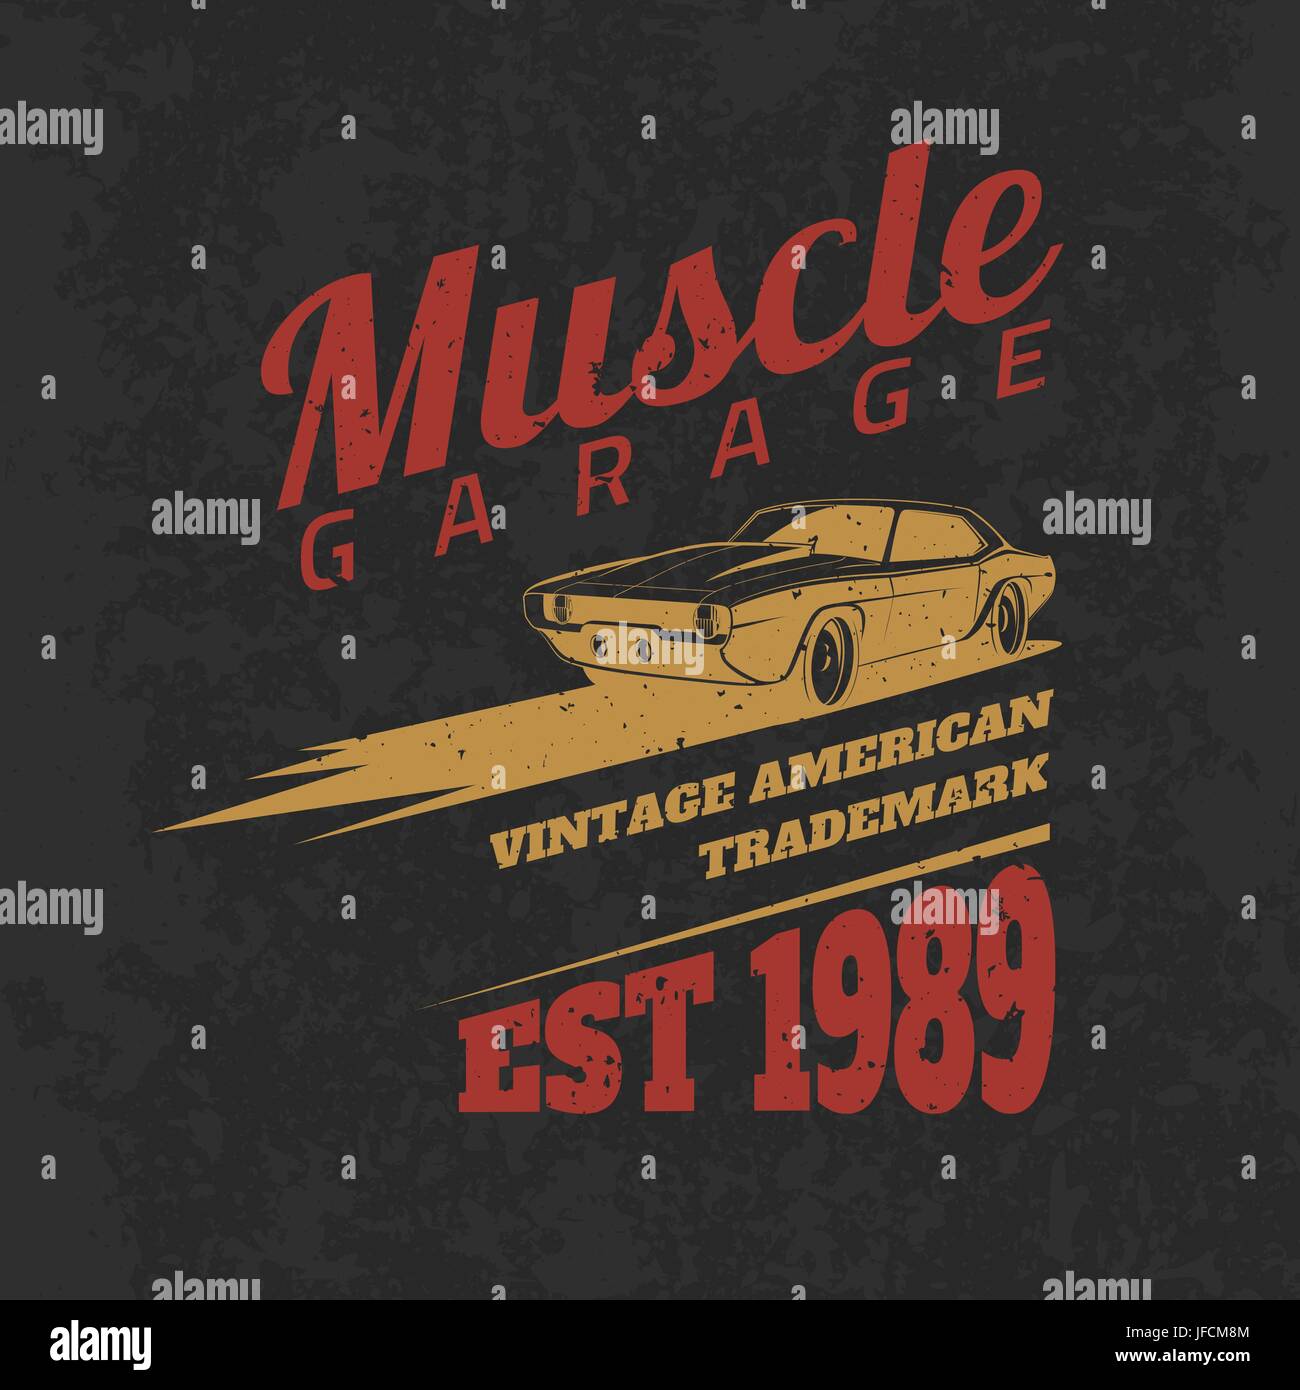 Vintage american muscle car tee print design avec texture grunge.Vector old school car race poster. T-shirt design. Illustration de Vecteur